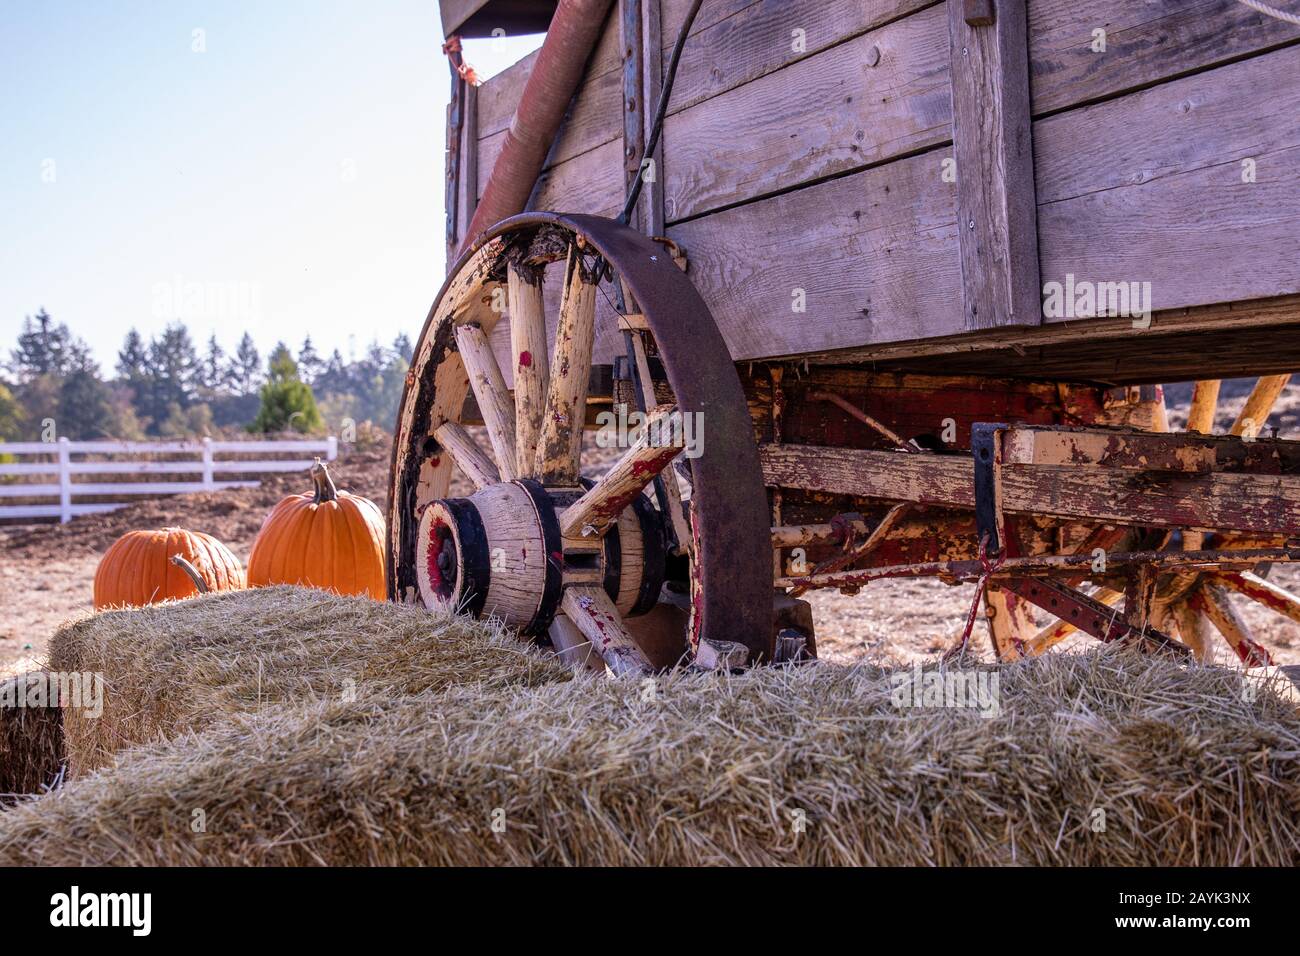 Hay and Straw – Wagon Wheel Farm